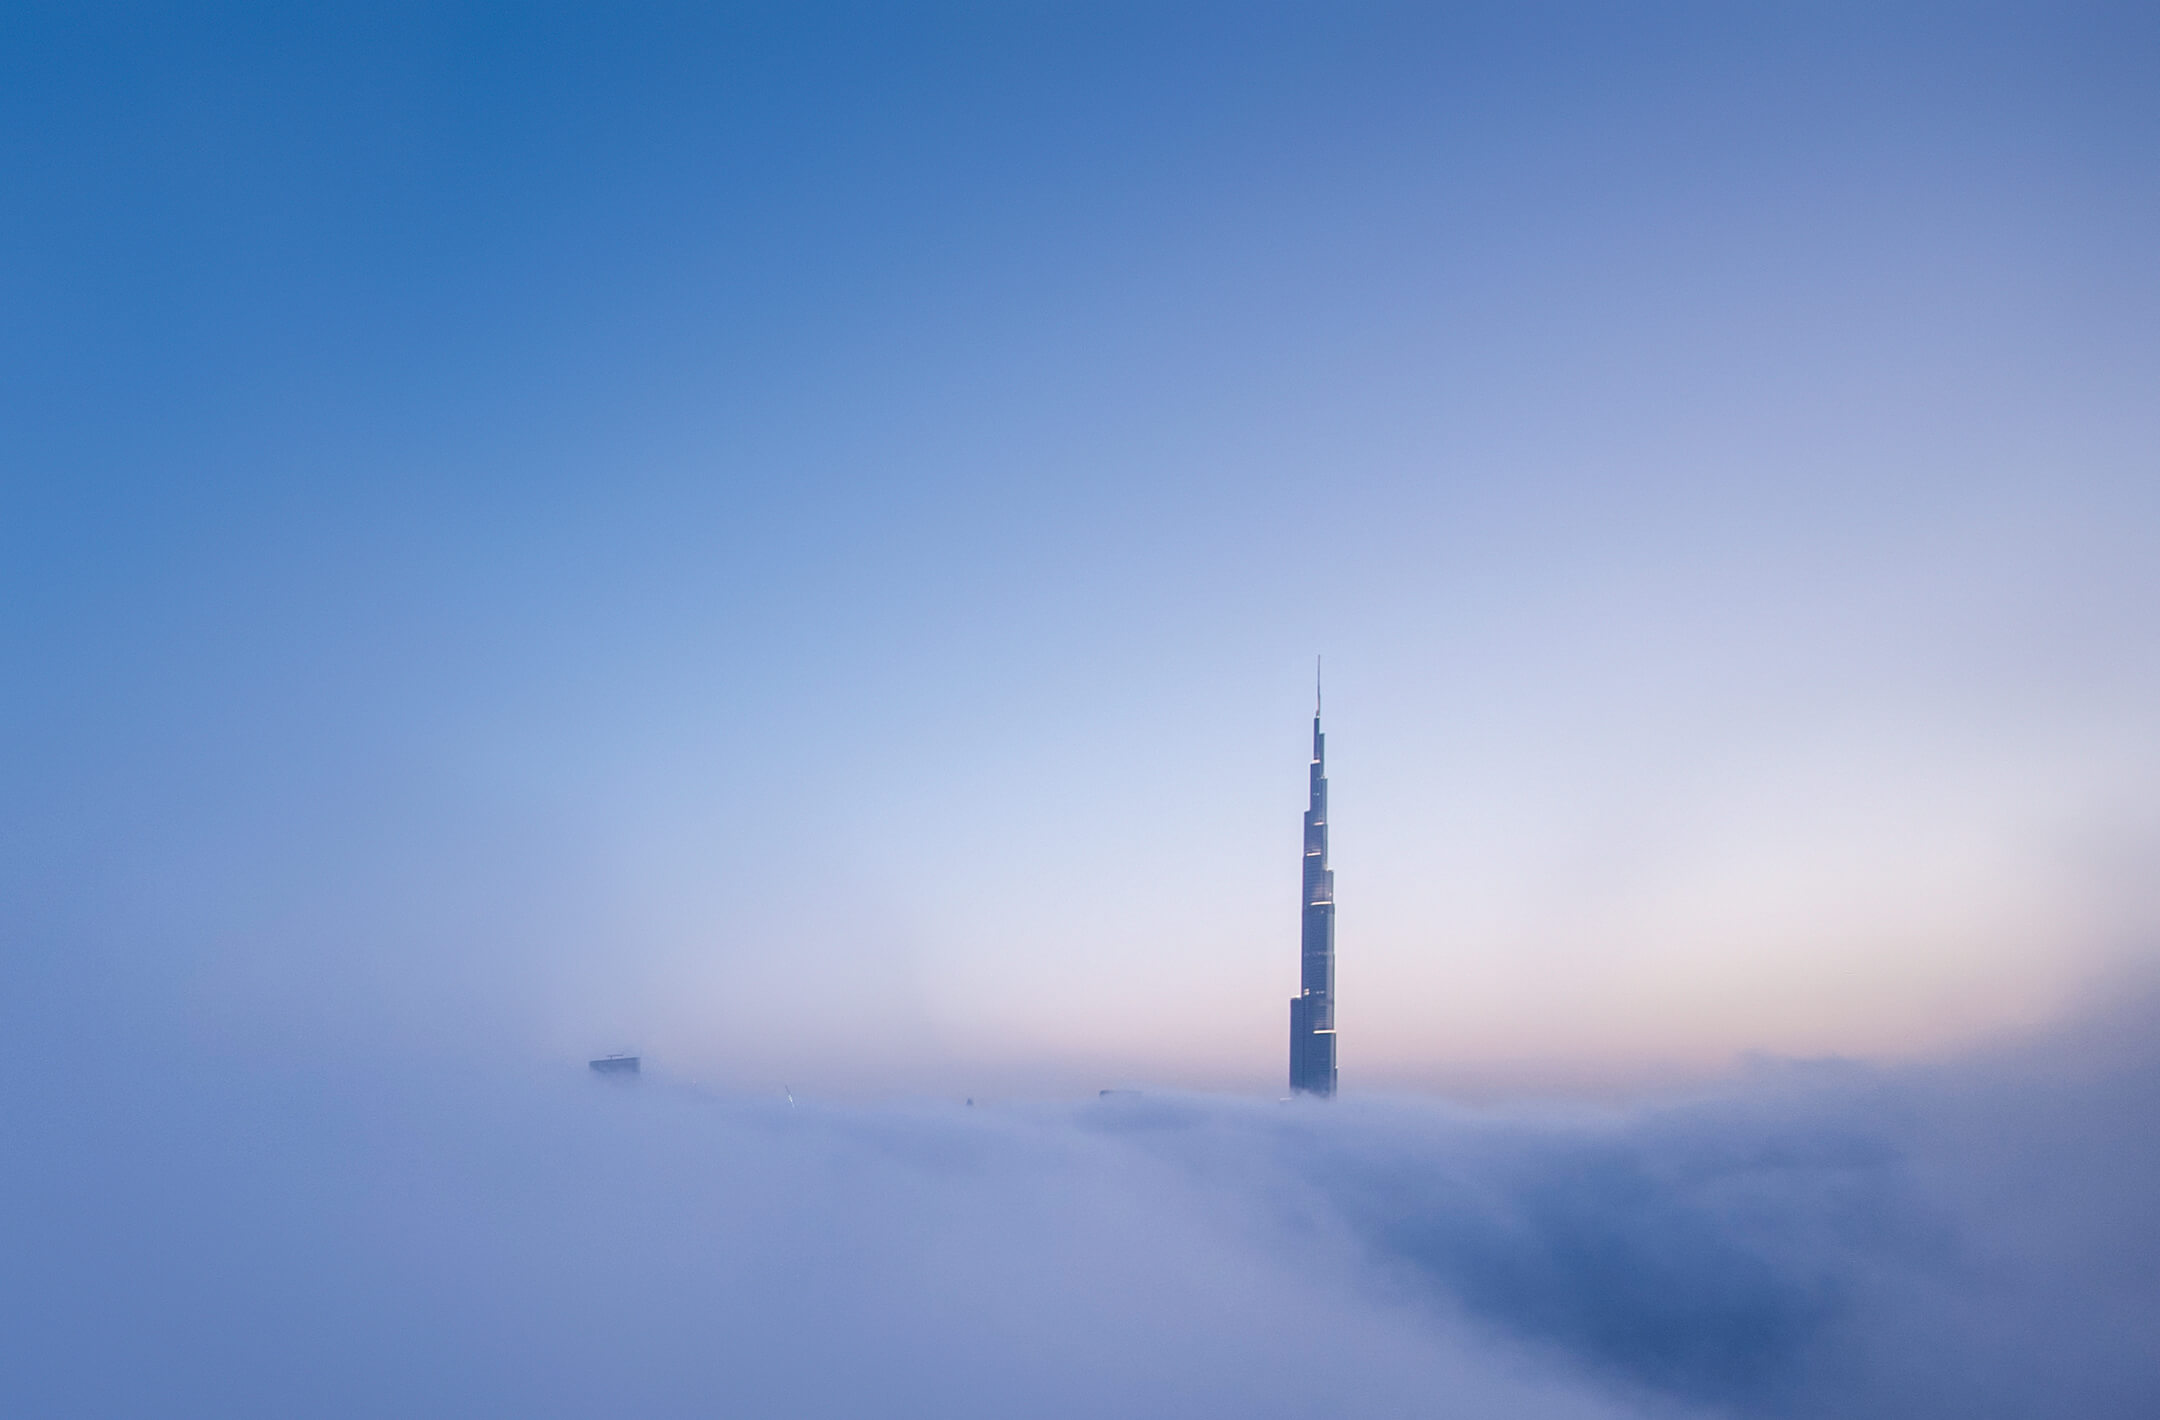 Himmelsstürmer: Wer den Blick über die Wolken wagen möchte, muss gleich im doppelten Sinne schwindelfrei sein. Denn wer seine Höhenangst überwindet und die Aussichtsplattform des Burj Khalifa in Dubai im 148. Stock besucht, muss dafür durch die höchste Karusselltür der Welt. Diese stammt vom Marktführer für Eingangslösungen, dem Unternehmen Boon Edam mit Hauptsitz im niederländischen Edam. IT-seitig setzt der Türspezialist auf eine integrierte PLM-Lösung auf Basis von SAP 4/HANA – unterstützt durch Cideon. Der Kern der Lösung bei Boon Edam besteht darin, Konstruktionszeichnungen automatisch in SAP zu integrieren und so eine zentrale Quelle – also eine „Single Source of Truth“ – für lokal erzeugte Daten mit unternehmensweitem Zugriff zu schaffen. Auch werden zukünftig Zeichnungen und relevante Dokumente für den Einkauf und das Angebotswesen nach definierten Regeln automatisch erzeugt. © National Geographic Creative/Alamy Stock Photo